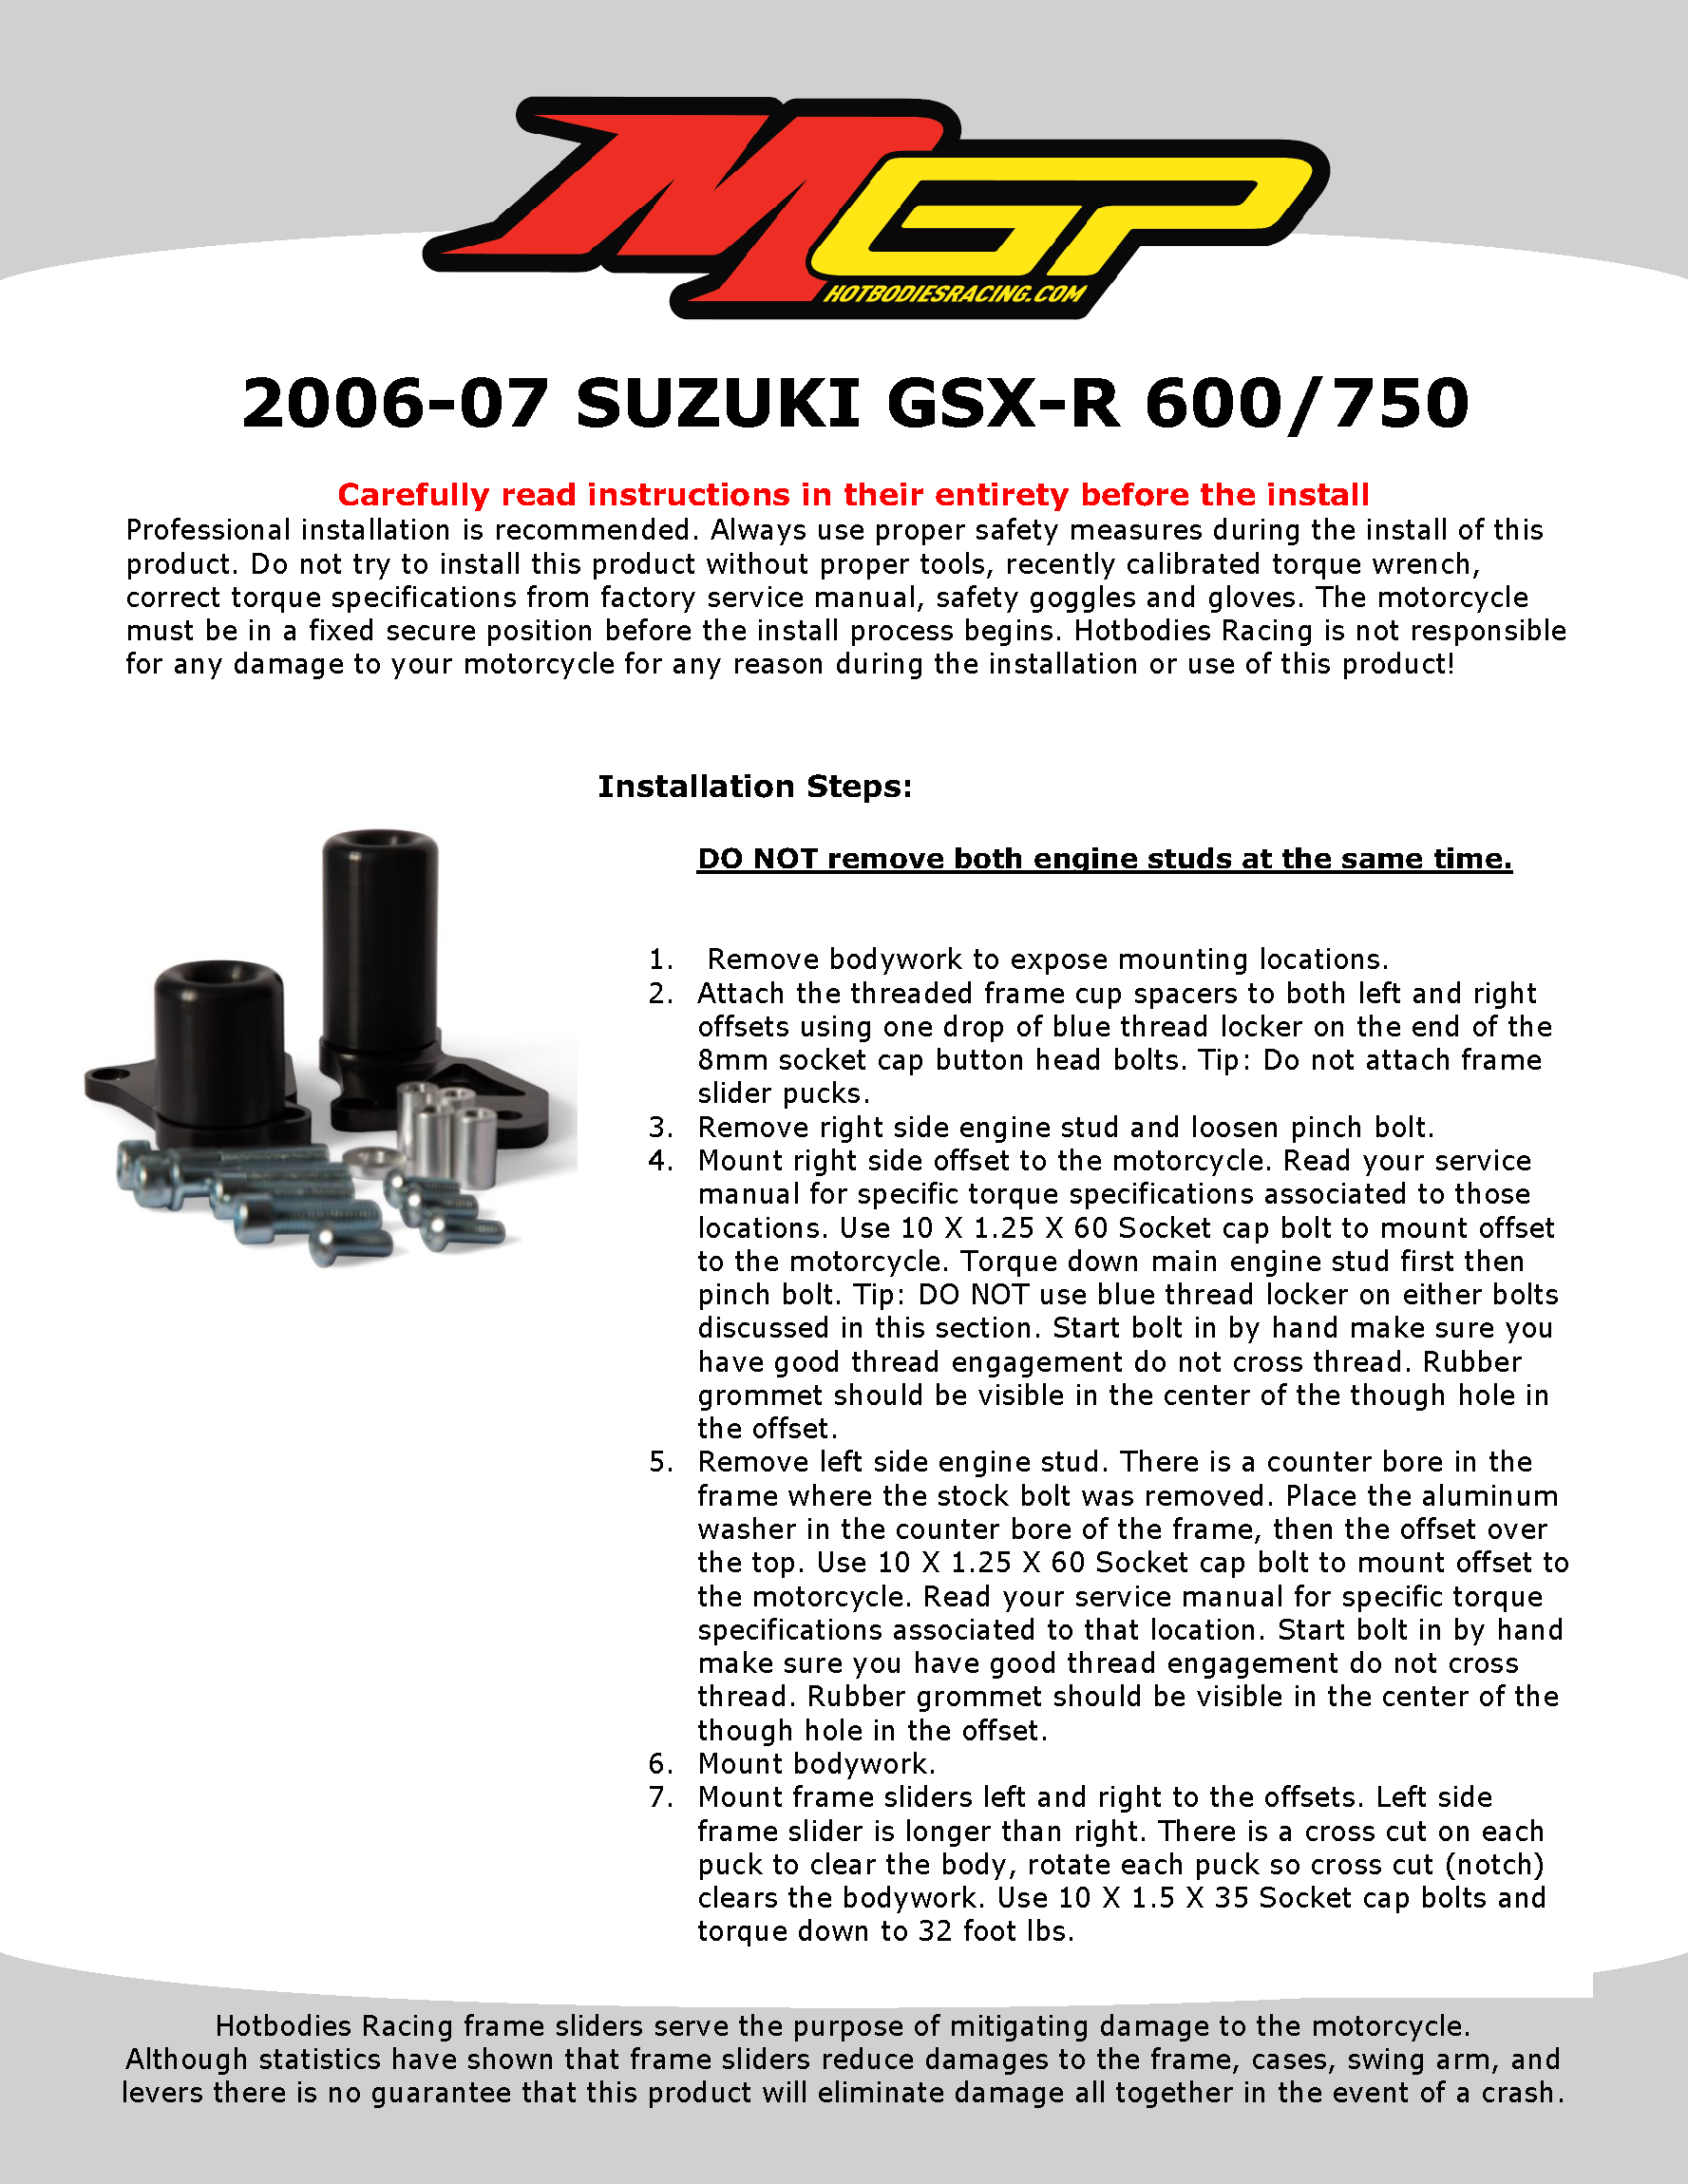 

2006-07 SUZUKI GSX-R 600/750

